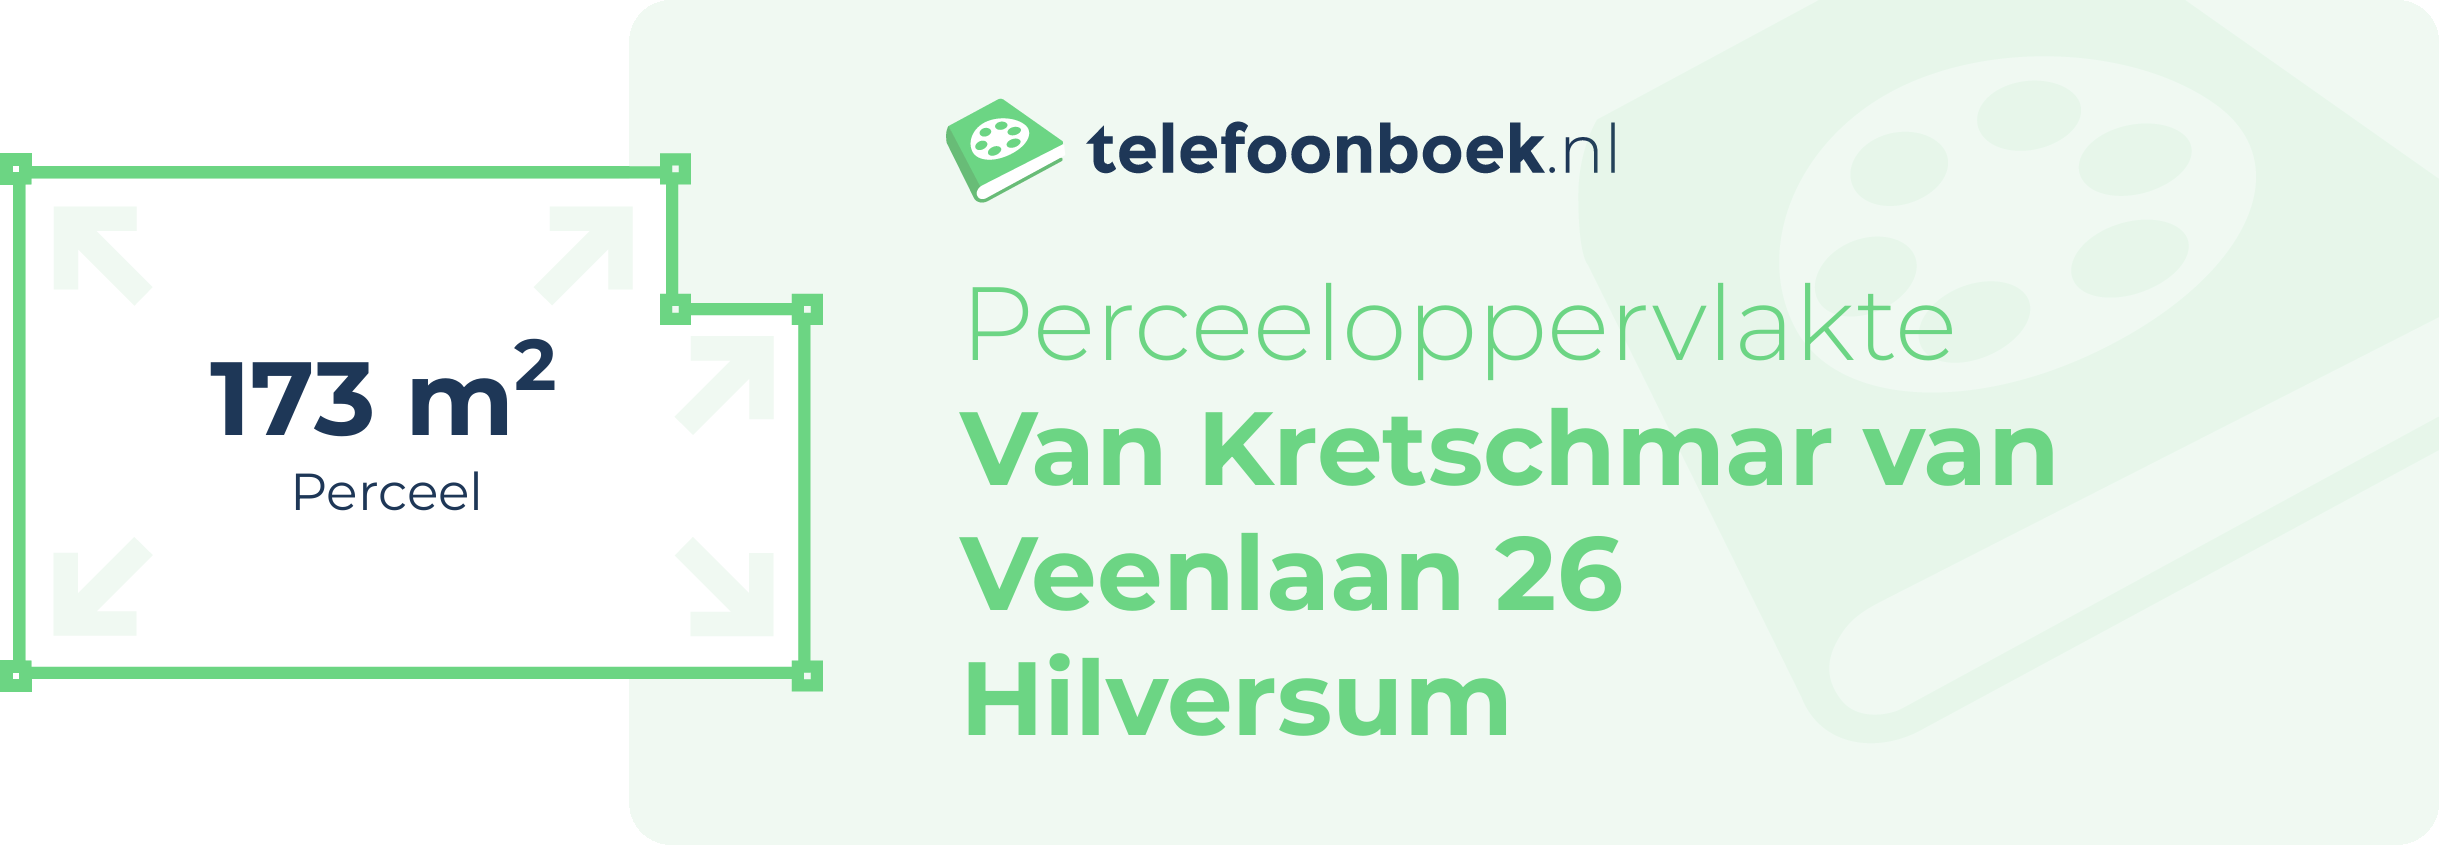 Perceeloppervlakte Van Kretschmar Van Veenlaan 26 Hilversum